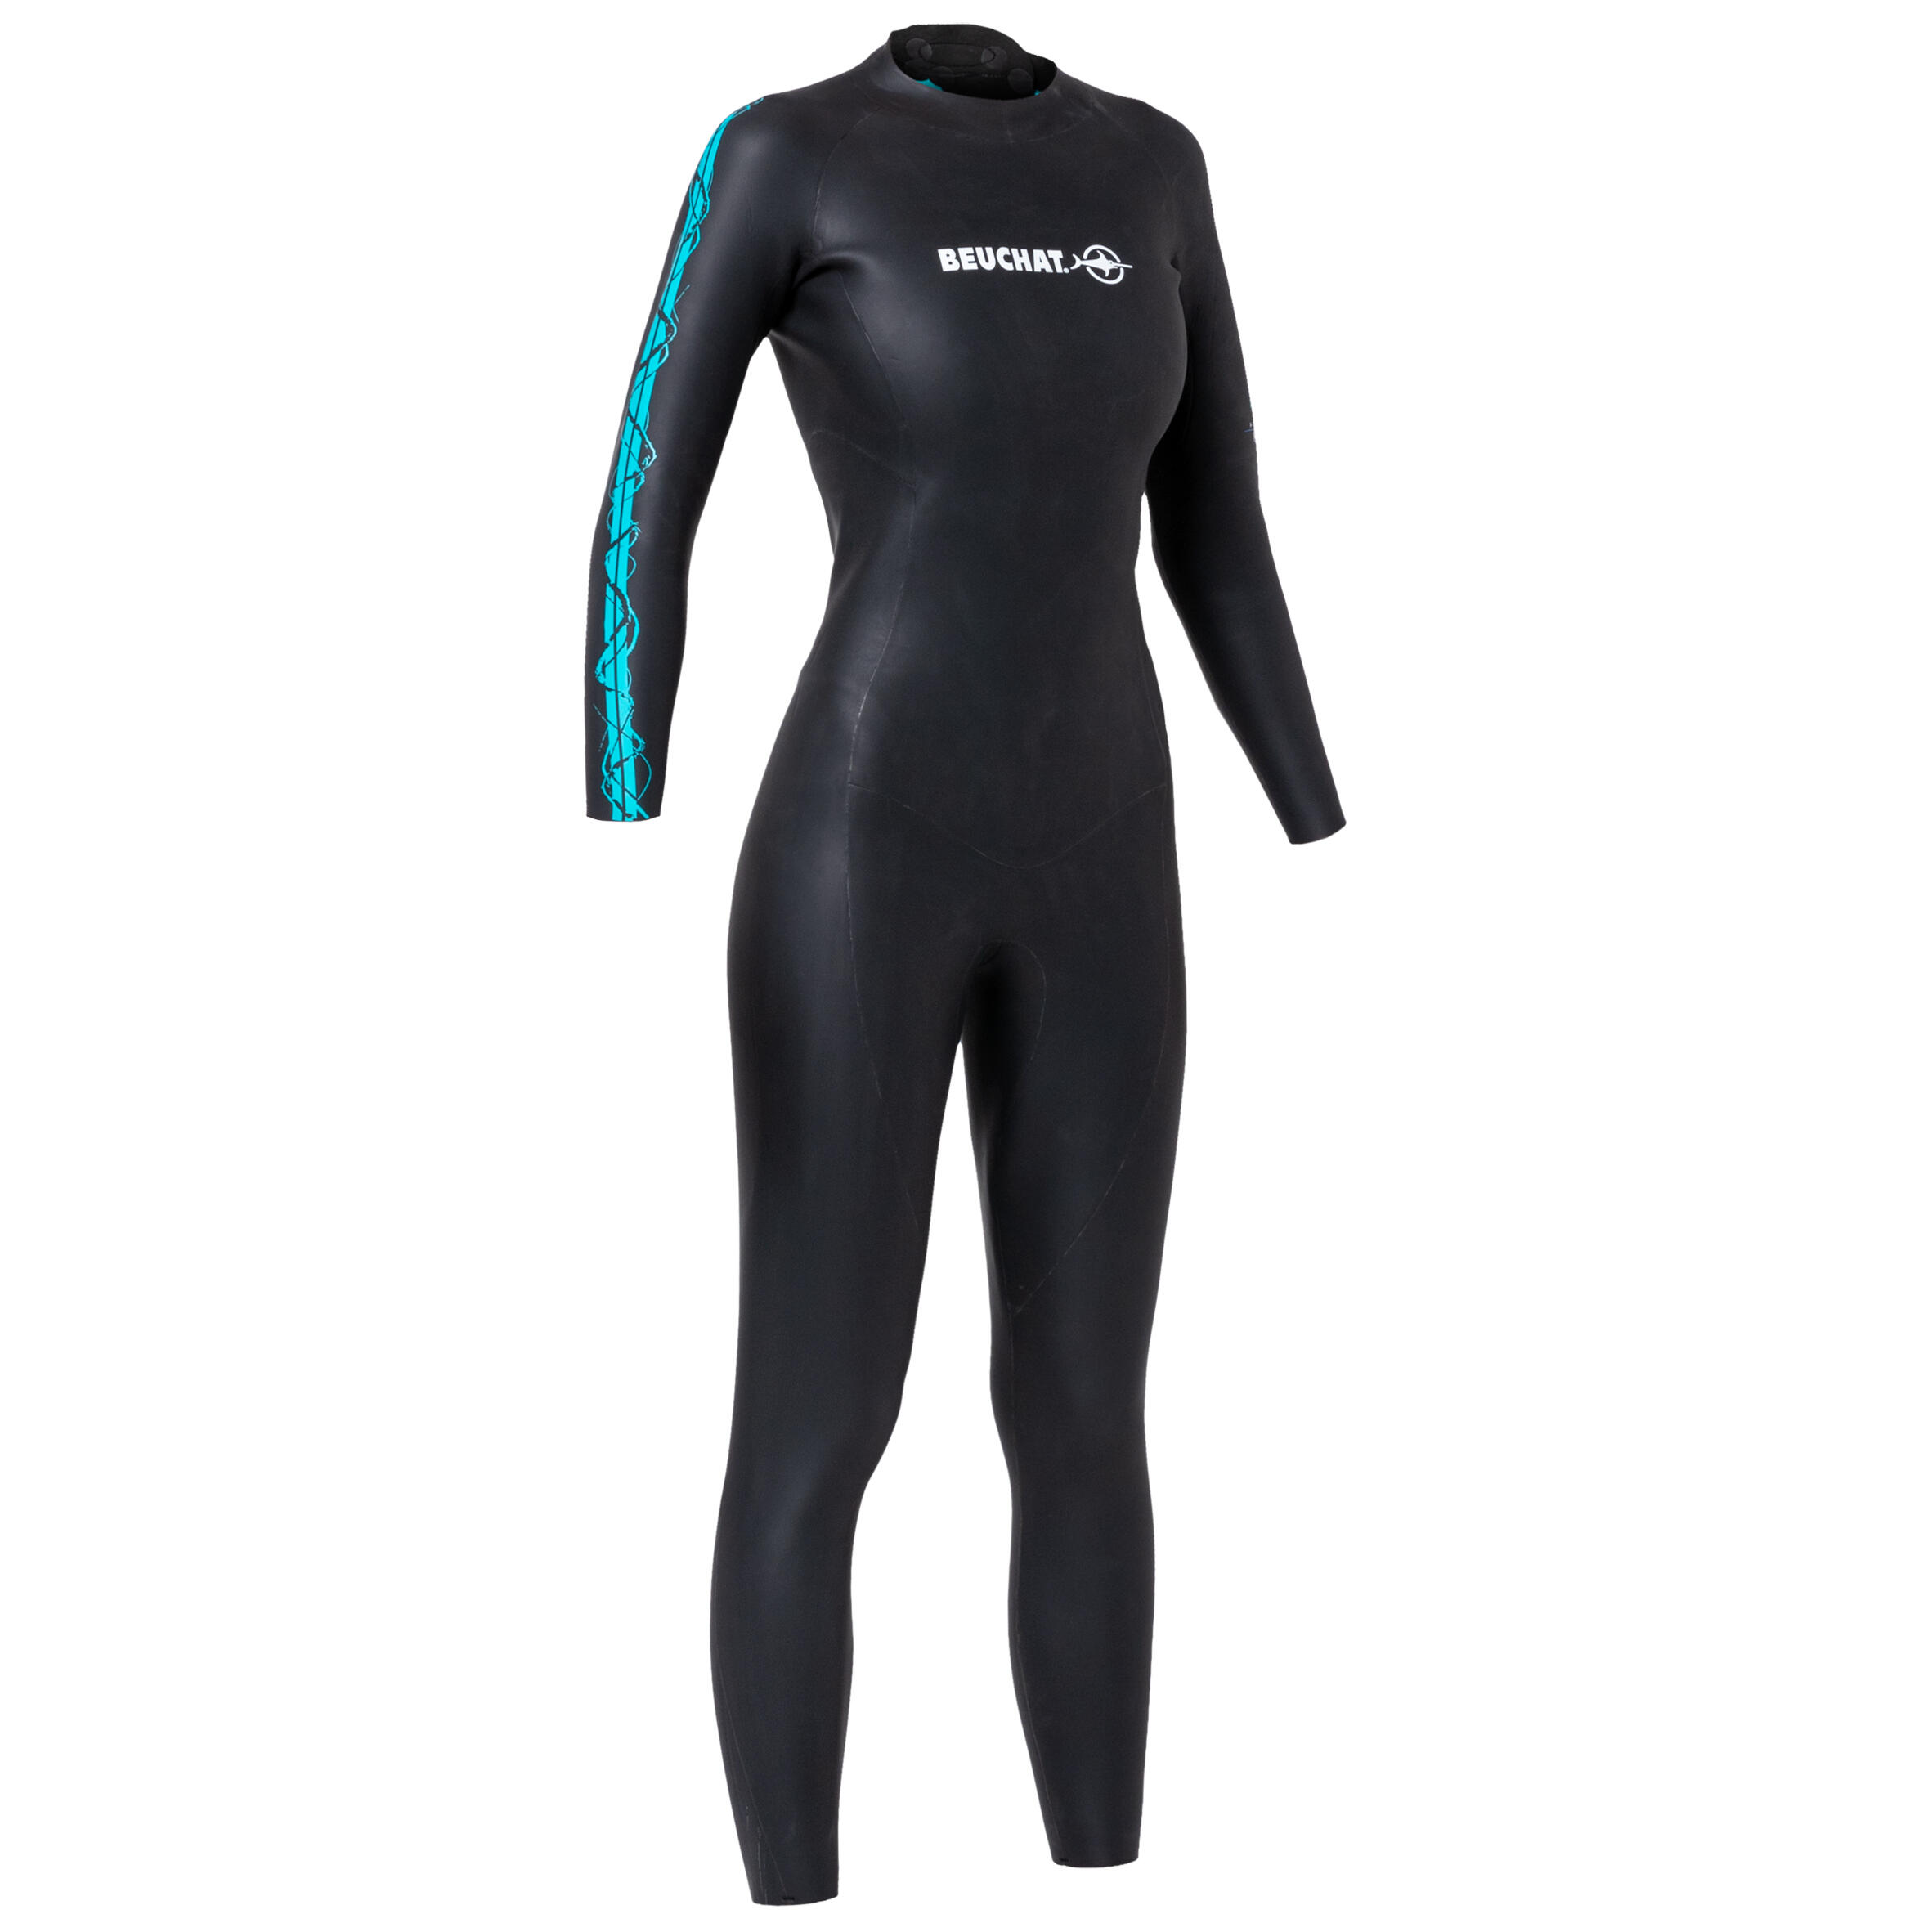 Women's freediving wetsuit 2 mm smooth neoprene Beuchat - ZENTO 9/9